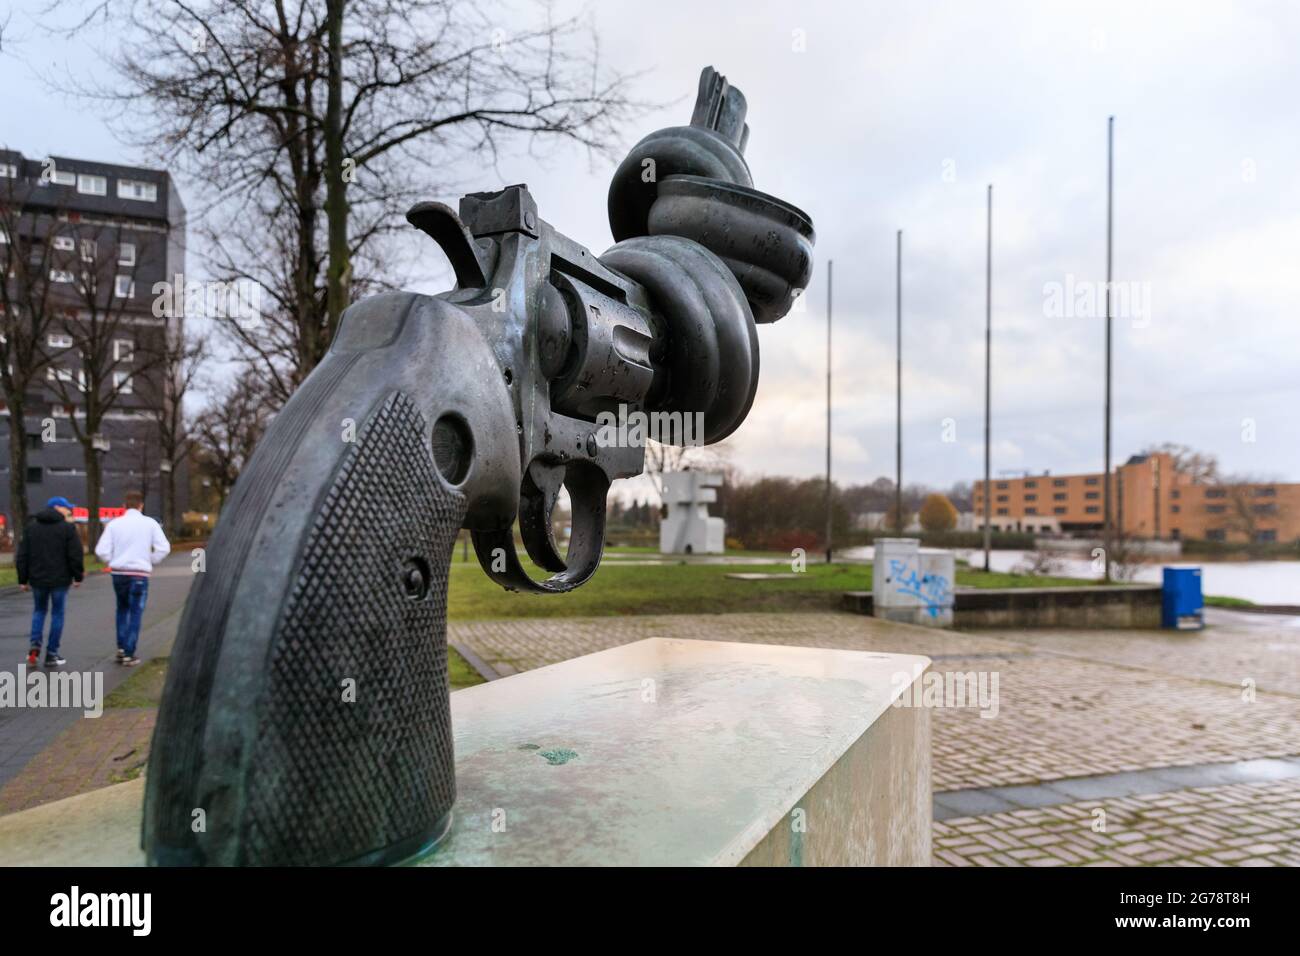 'Non-violence' de l'artiste suédois Carl Fredrik Reuterswärd, également connu sous le nom de Knotted Gun, Marl, Allemagne Banque D'Images